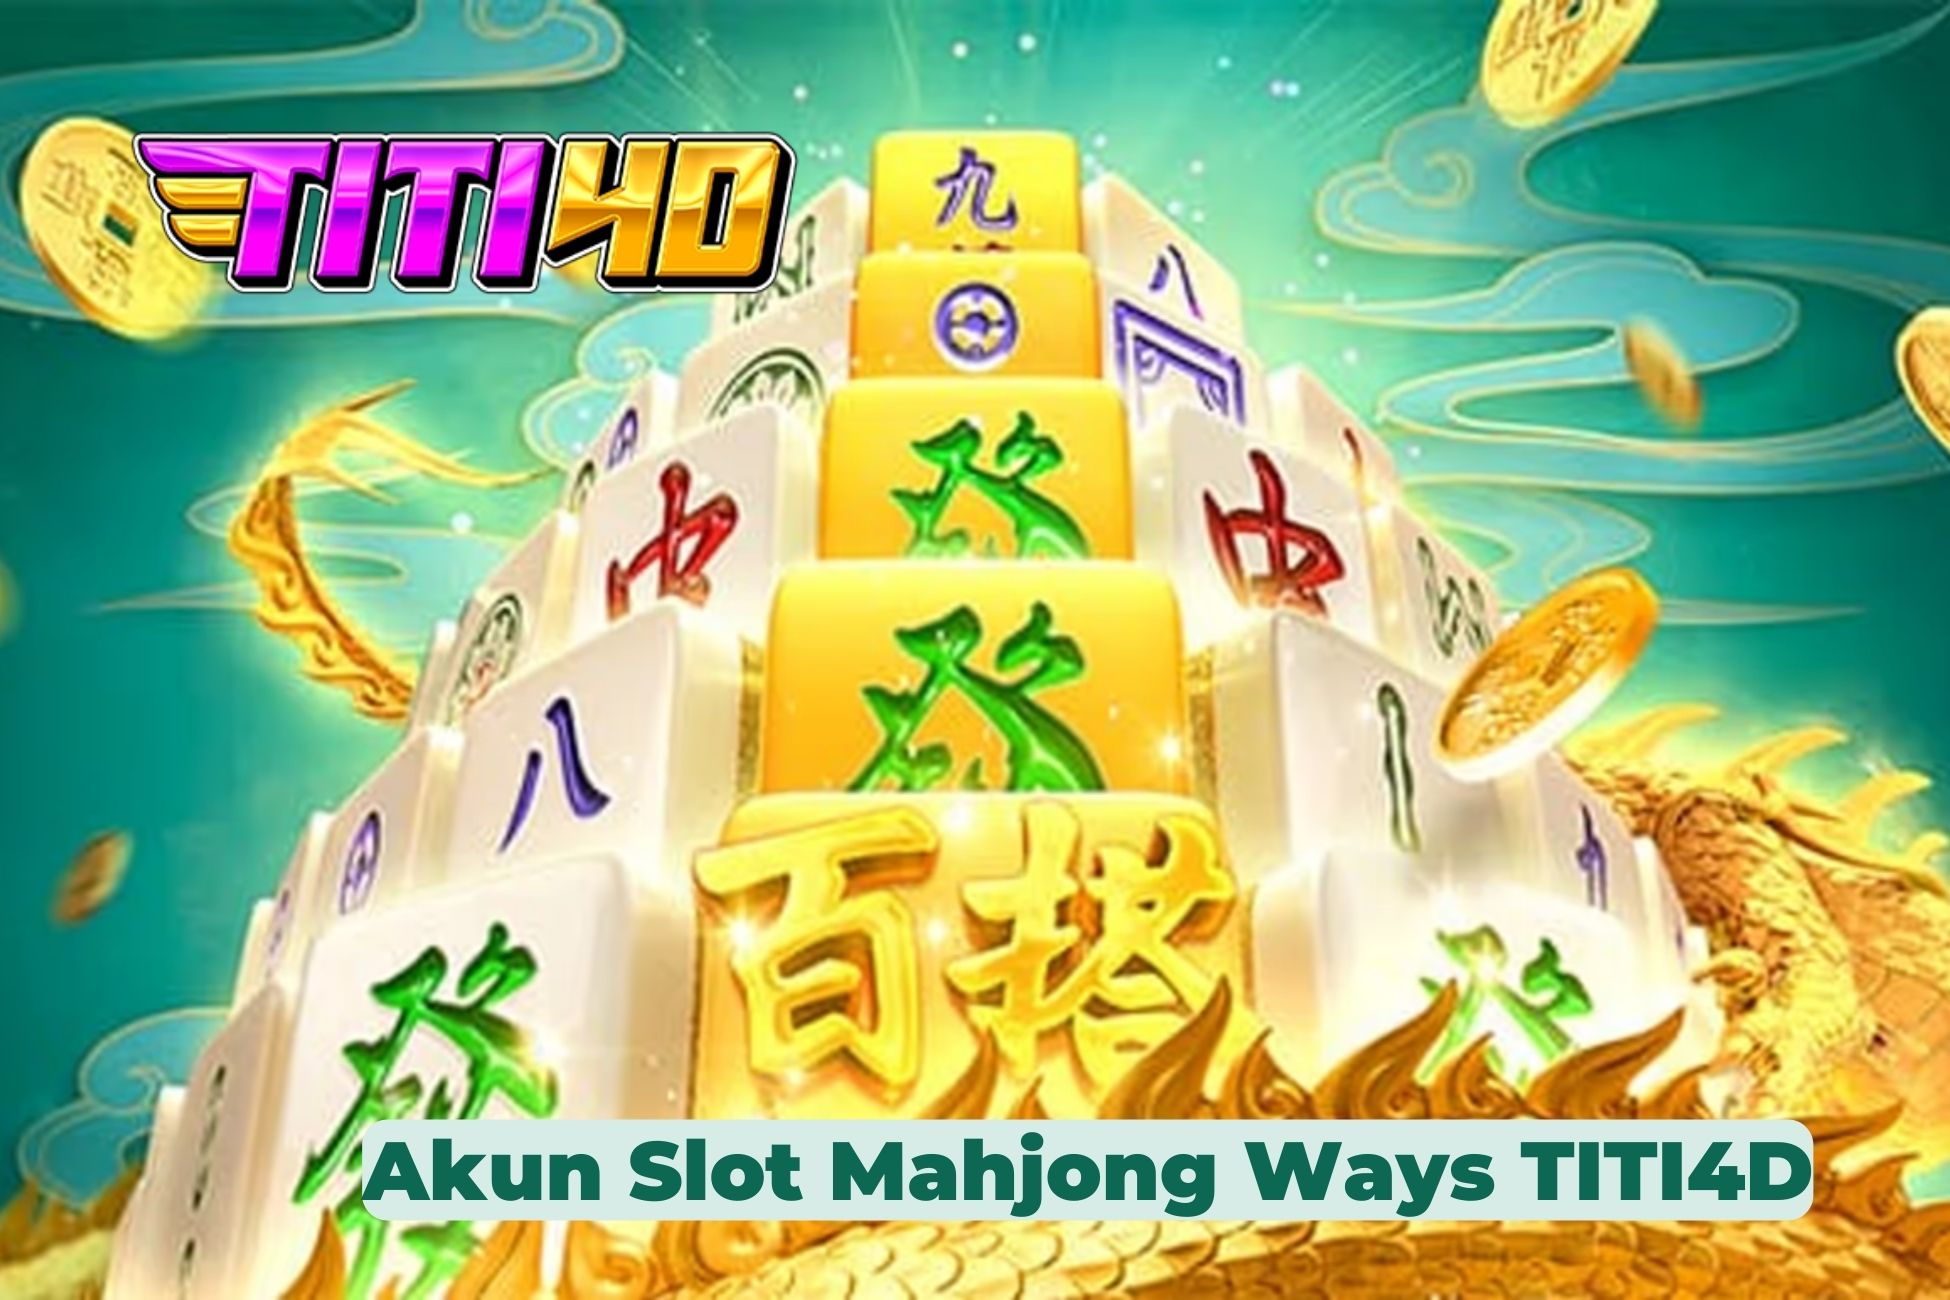 Akun Slot Mahjong Ways TITI4D